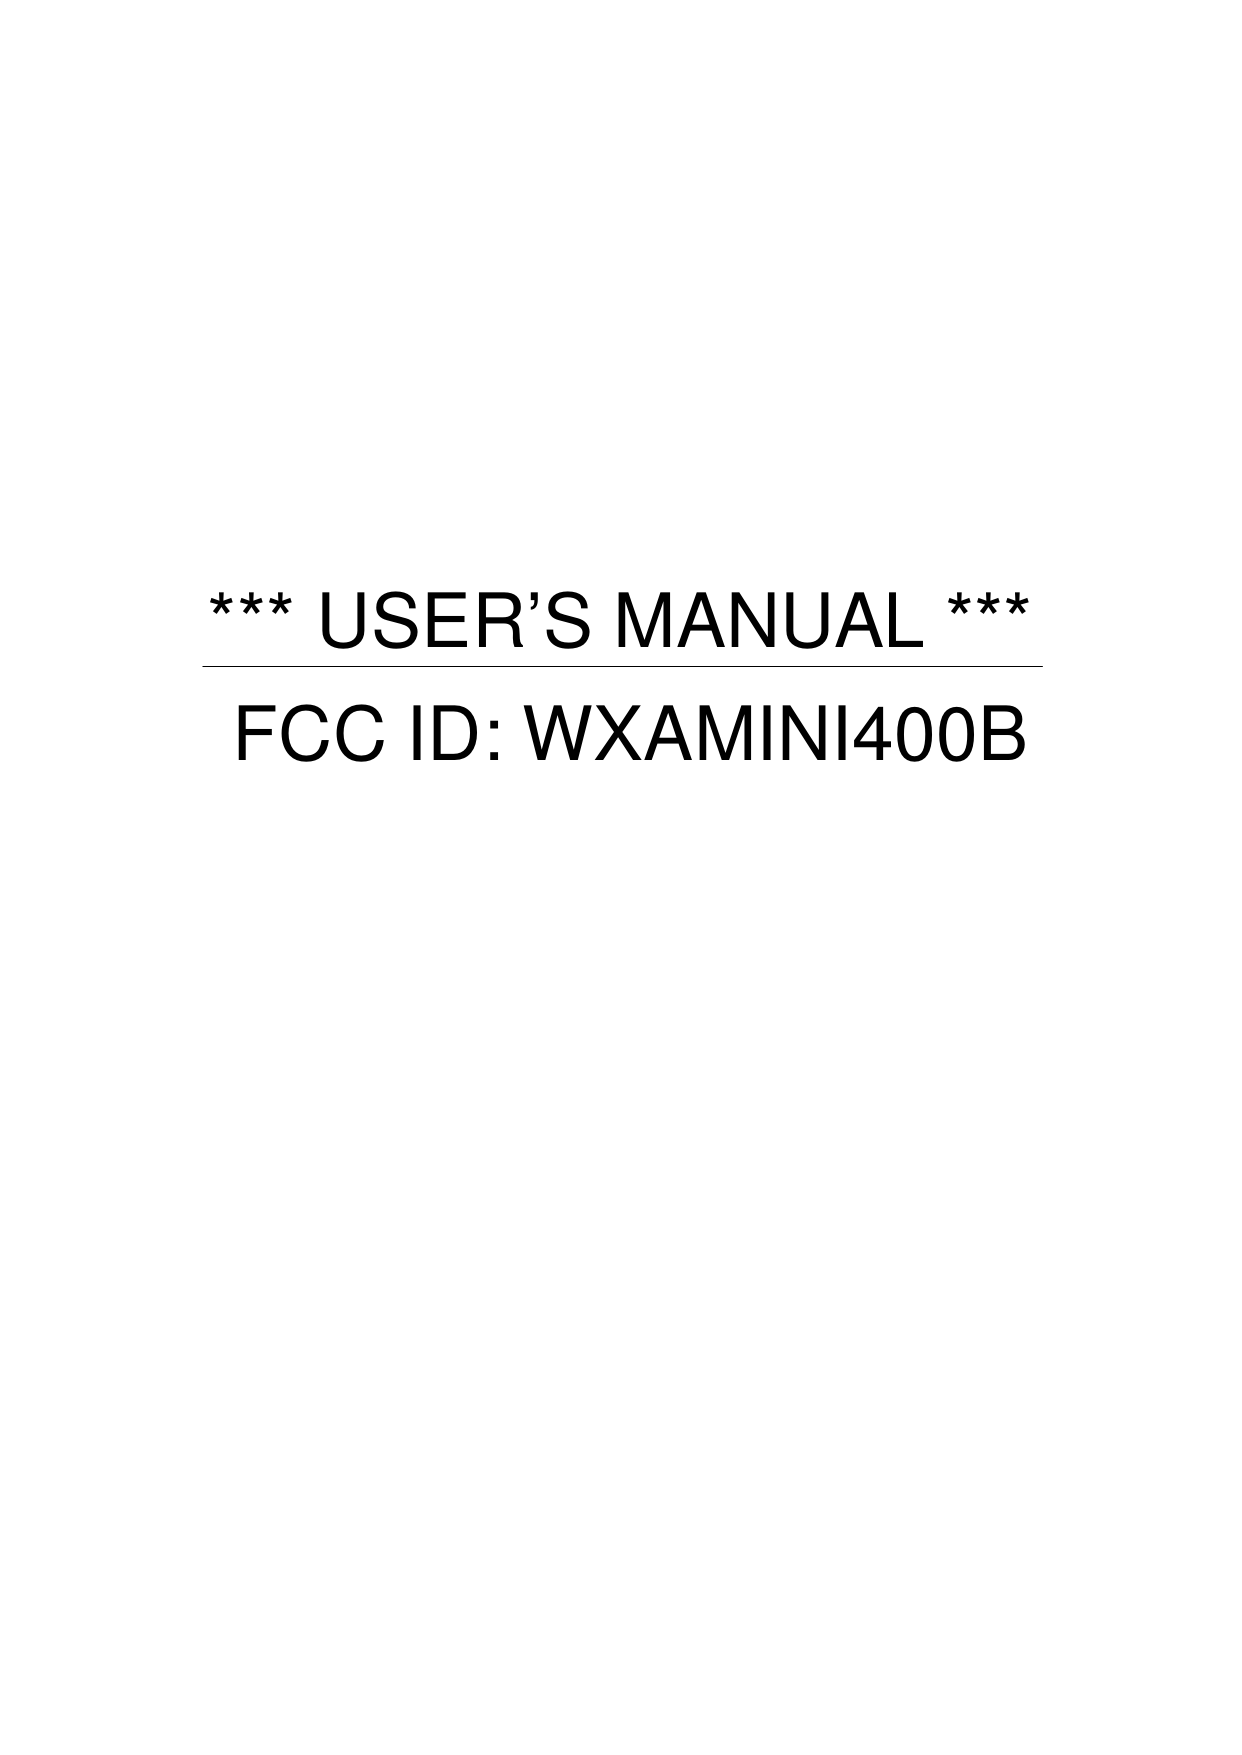            *** USER’S MANUAL *** FCC ID: WXAMINI400B 